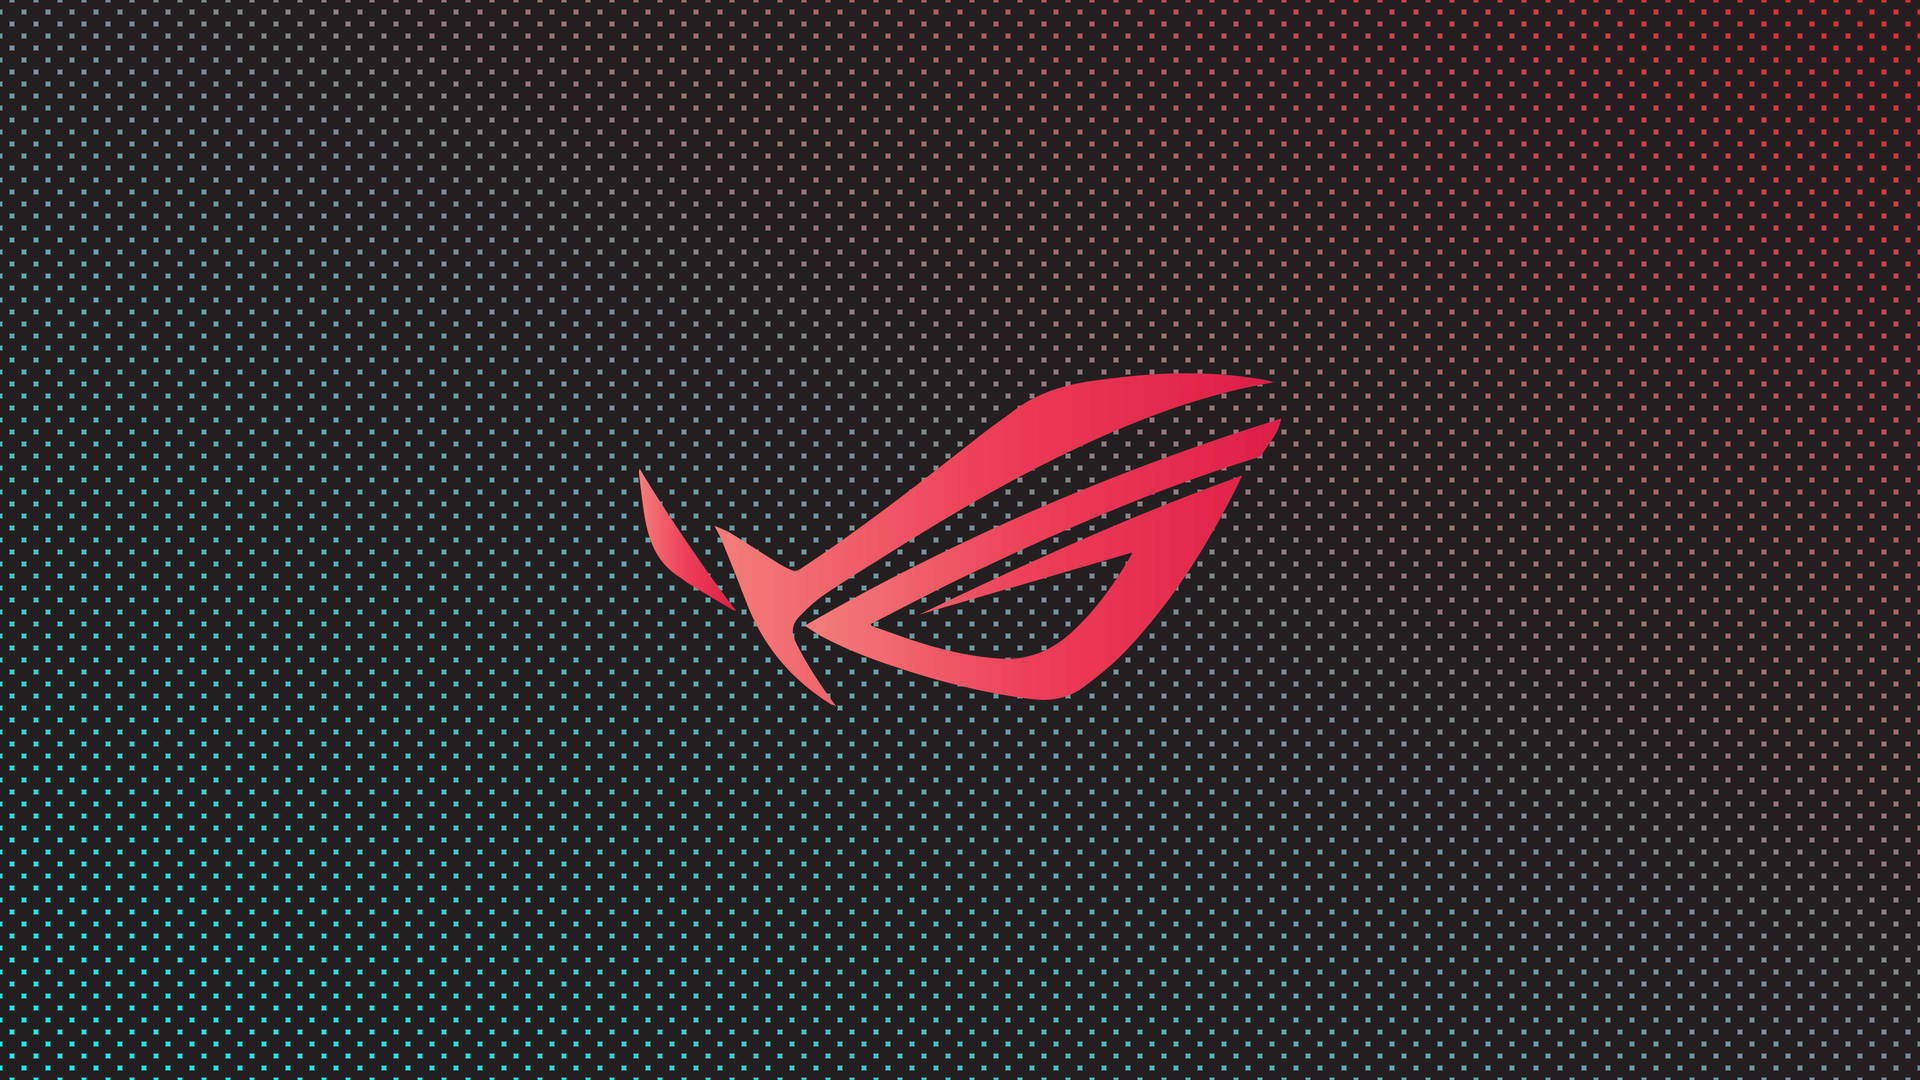 Red Rog Gaming Logo Hd